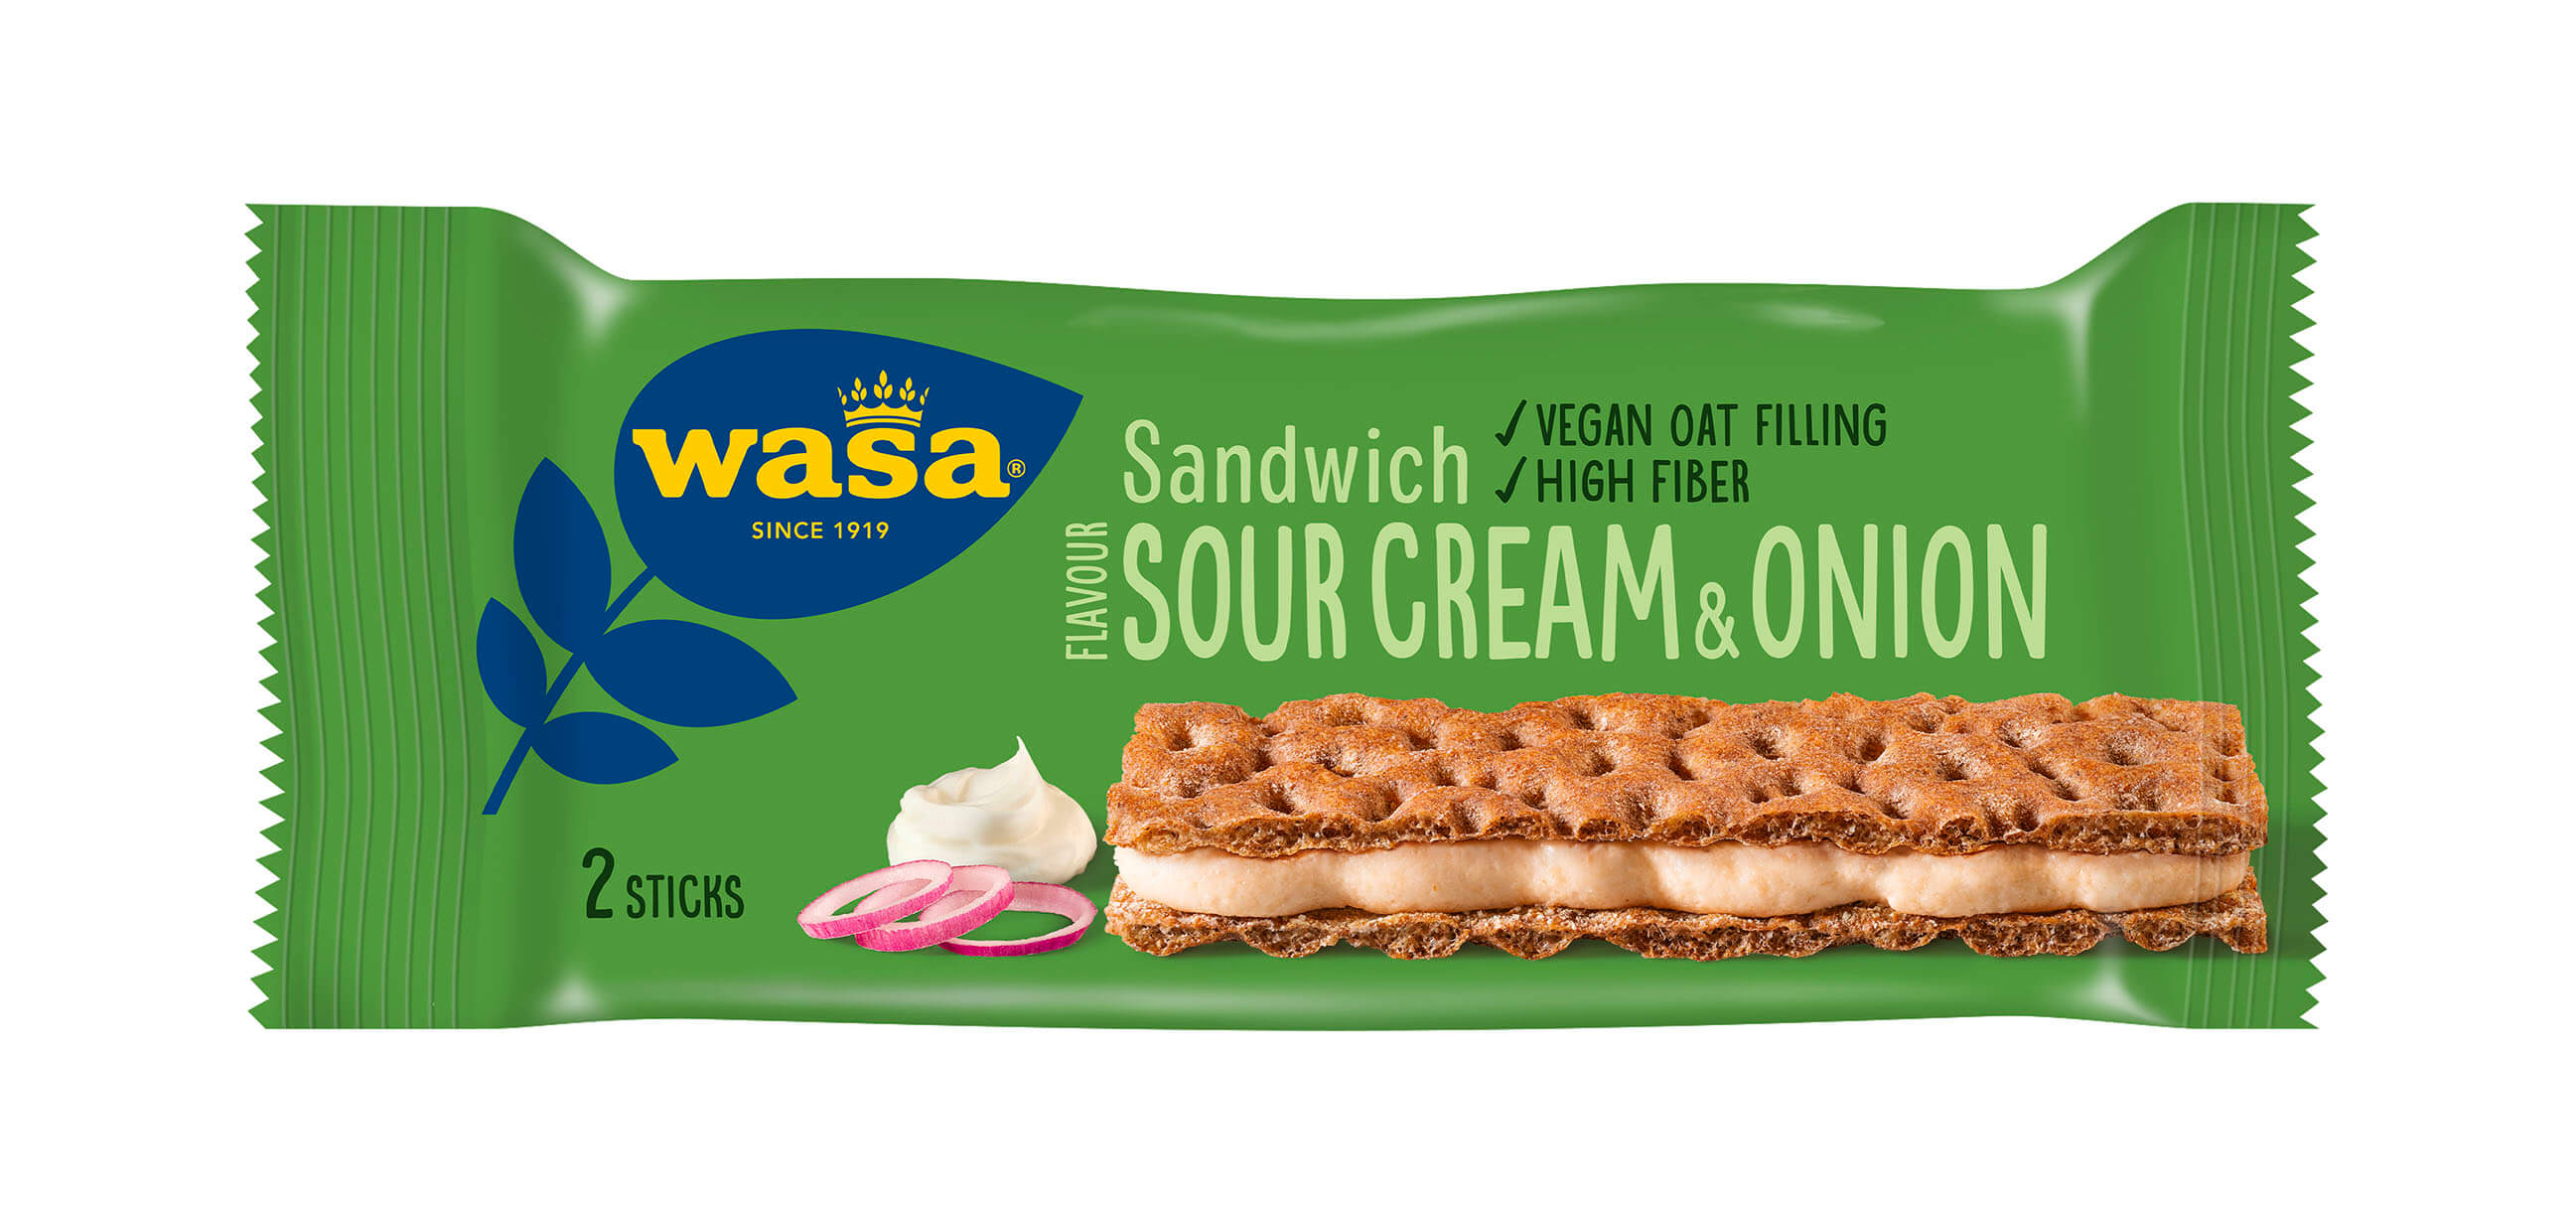 Sandwich Sour Cream & Onion - Upptäck ett veganskt mellanmål, gott knäckebröd med krämig fyllning. Utmärkt som mellanmål på språng